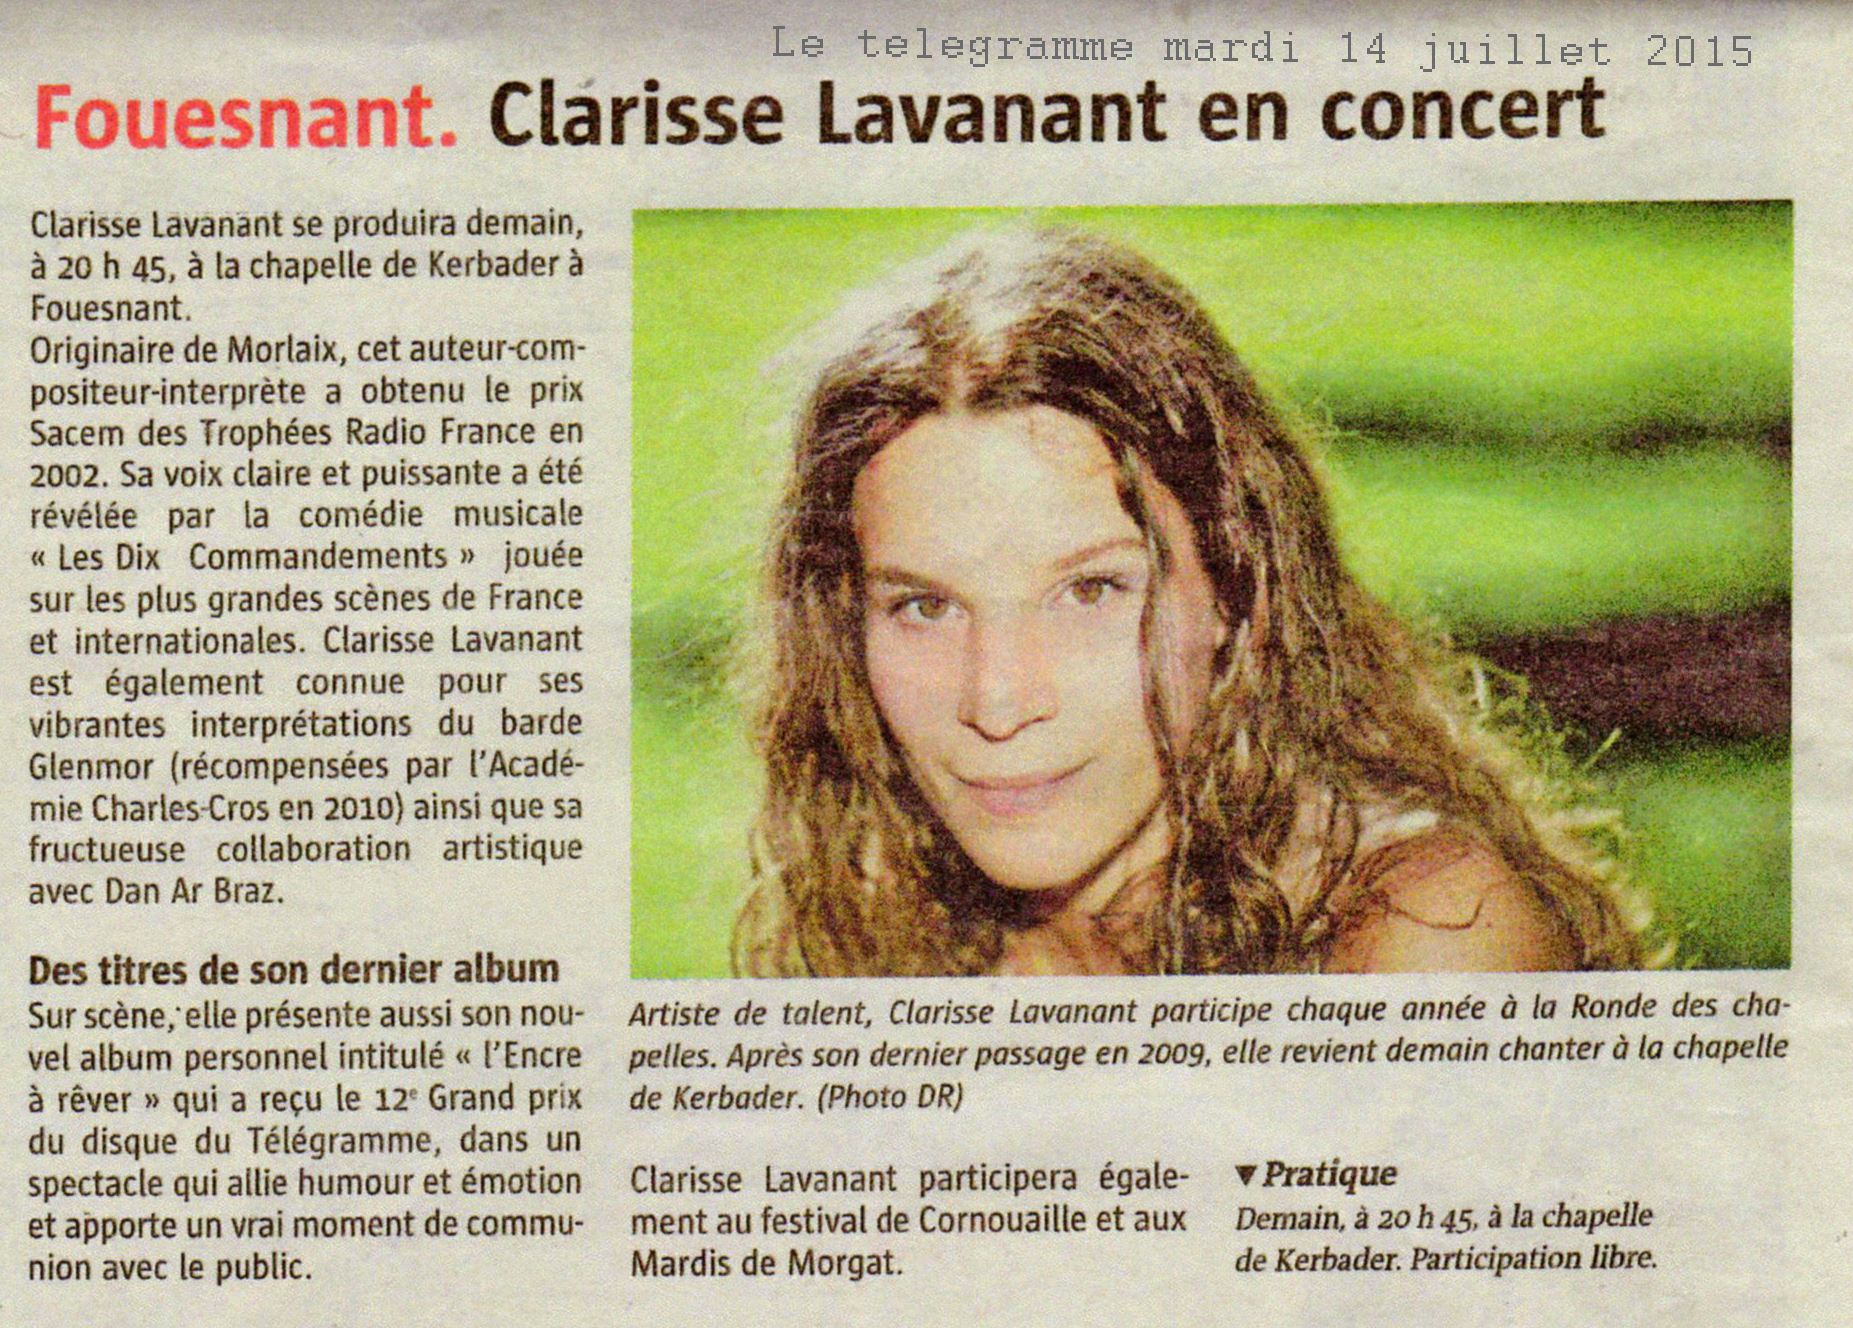 Clarisse Lavanant